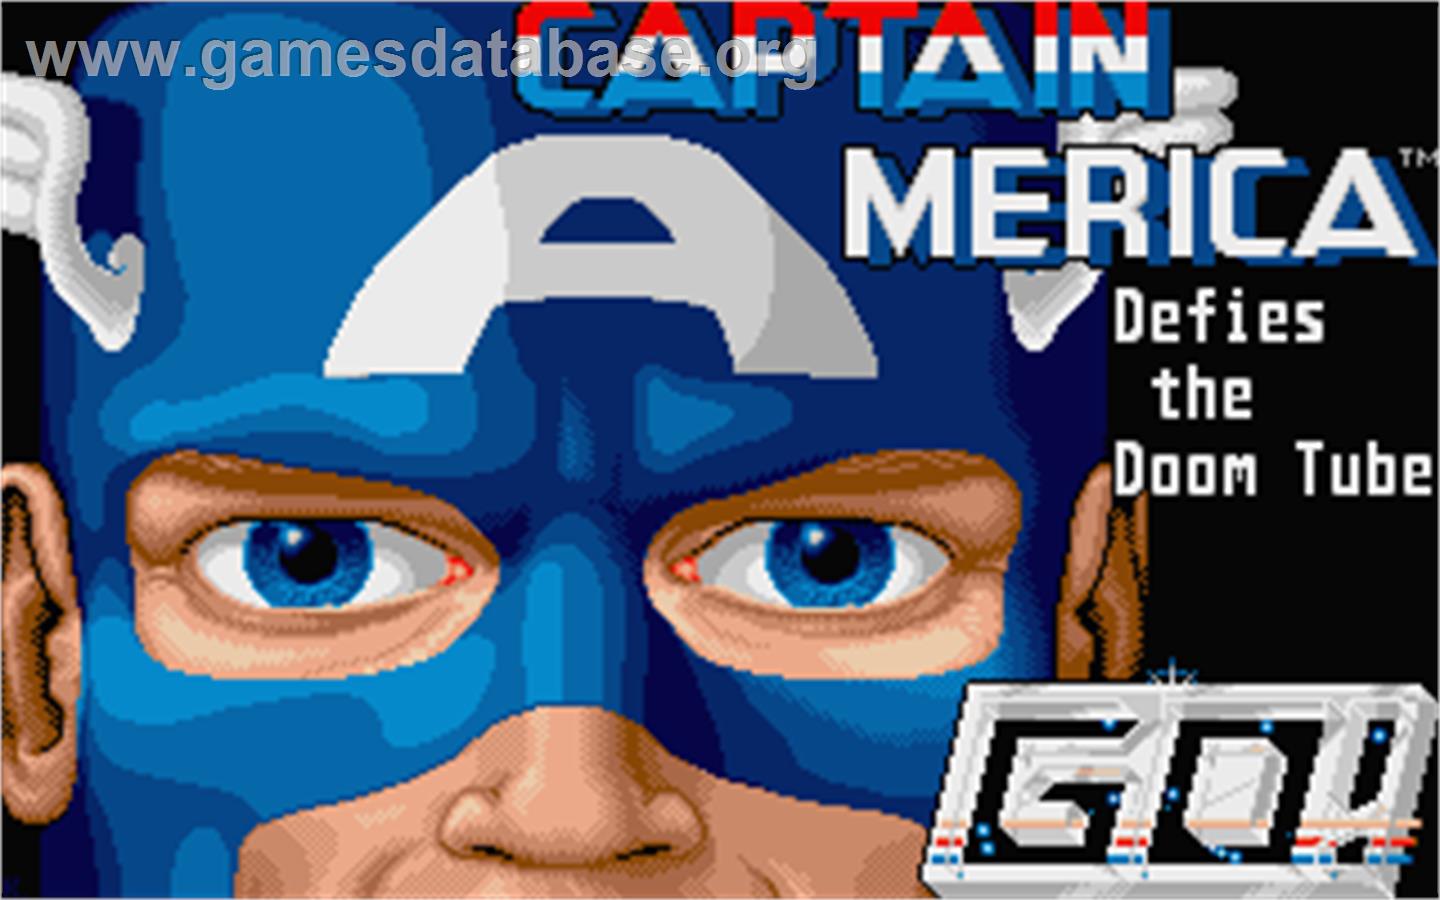 Captain America Defies the Doom Tube - Atari ST - Artwork - Title Screen